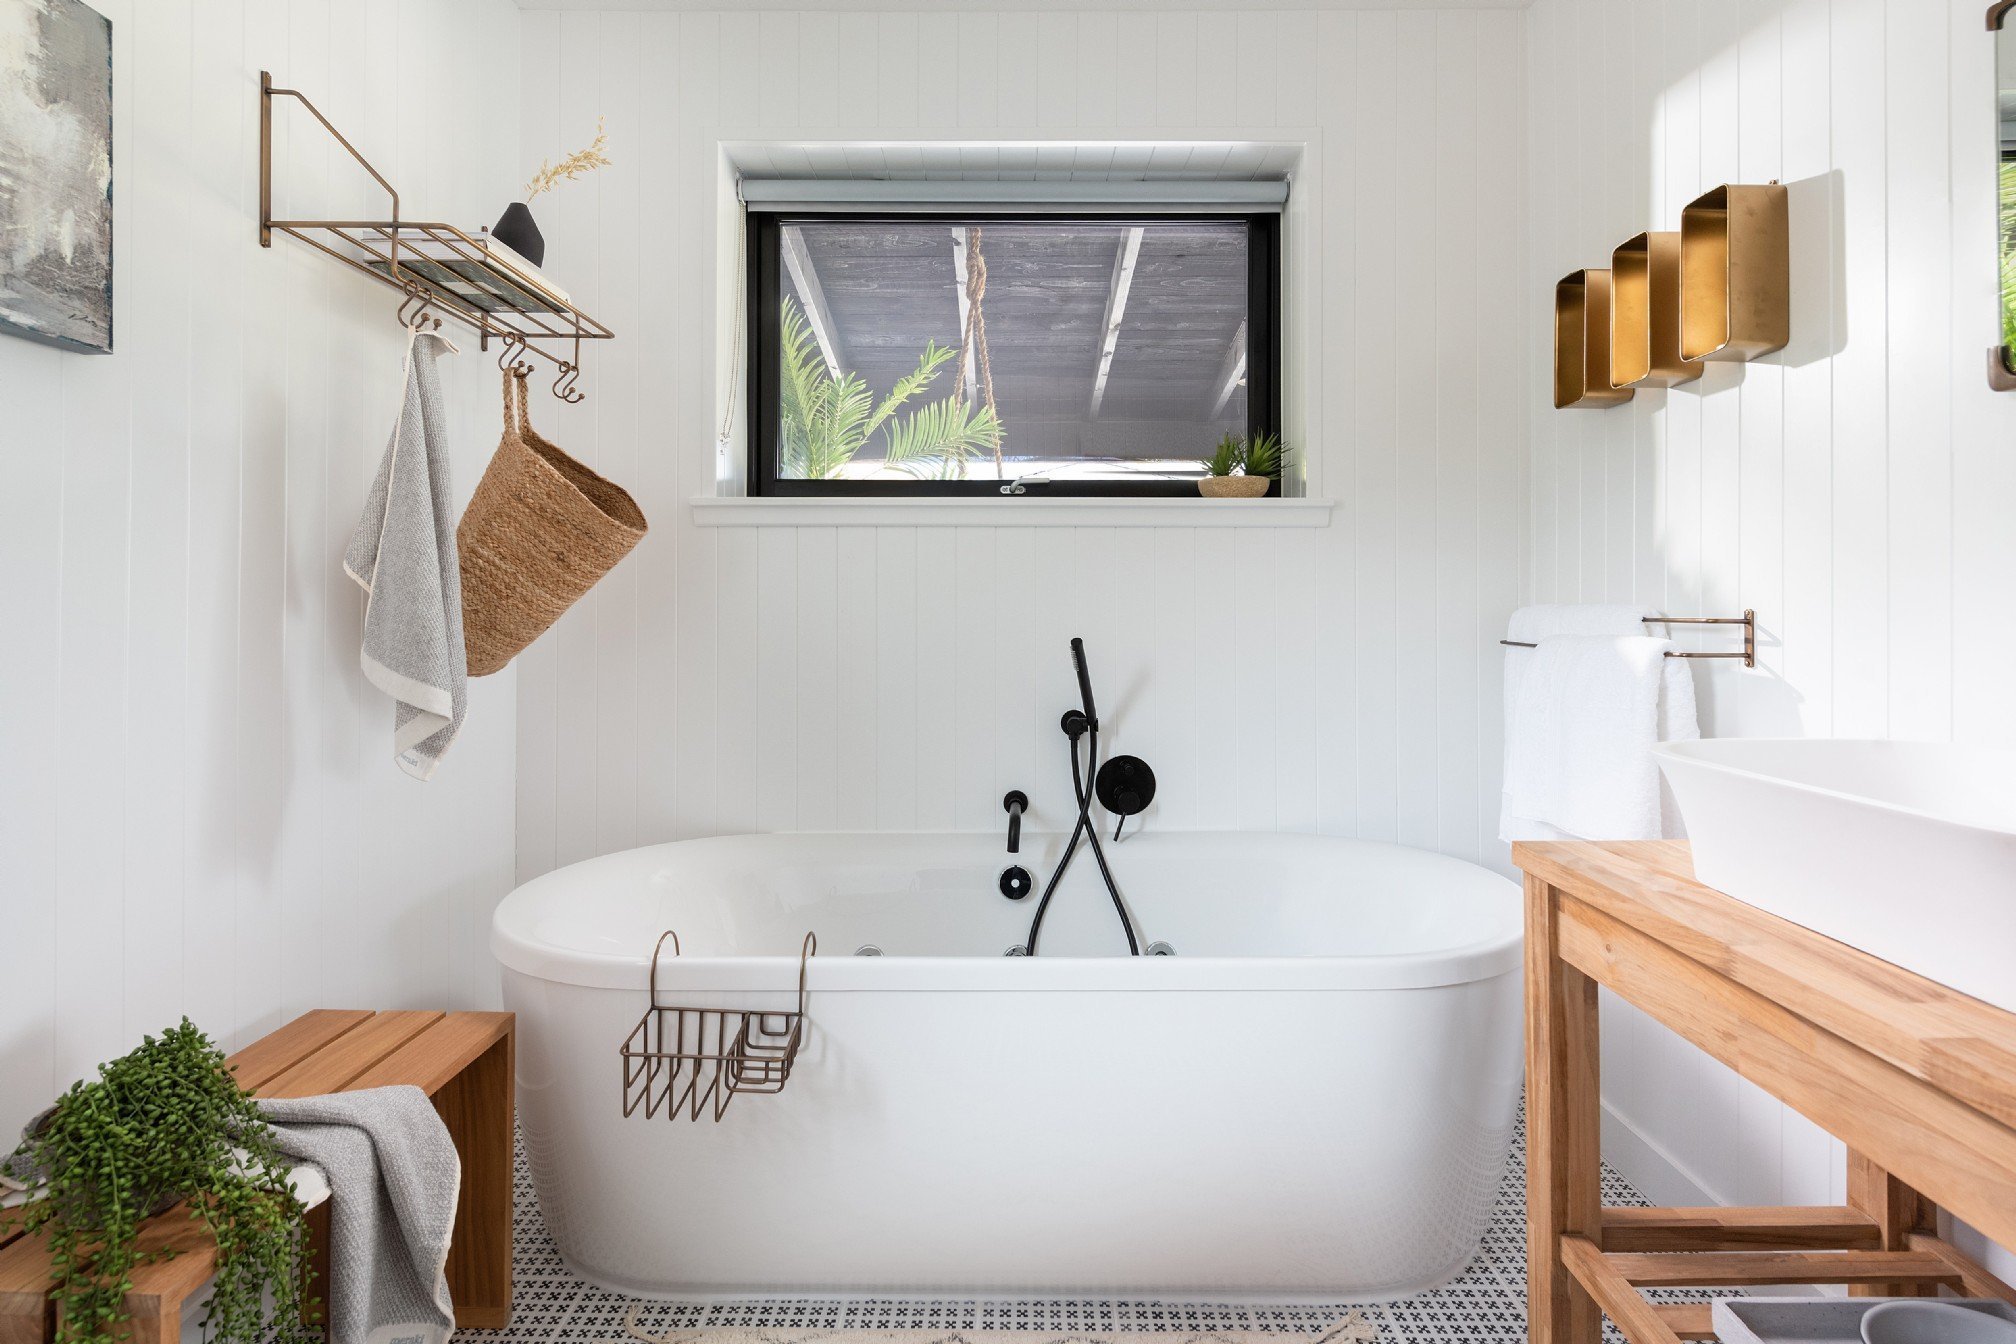 Ремонт ванной комнаты в скандинавском стиле фото